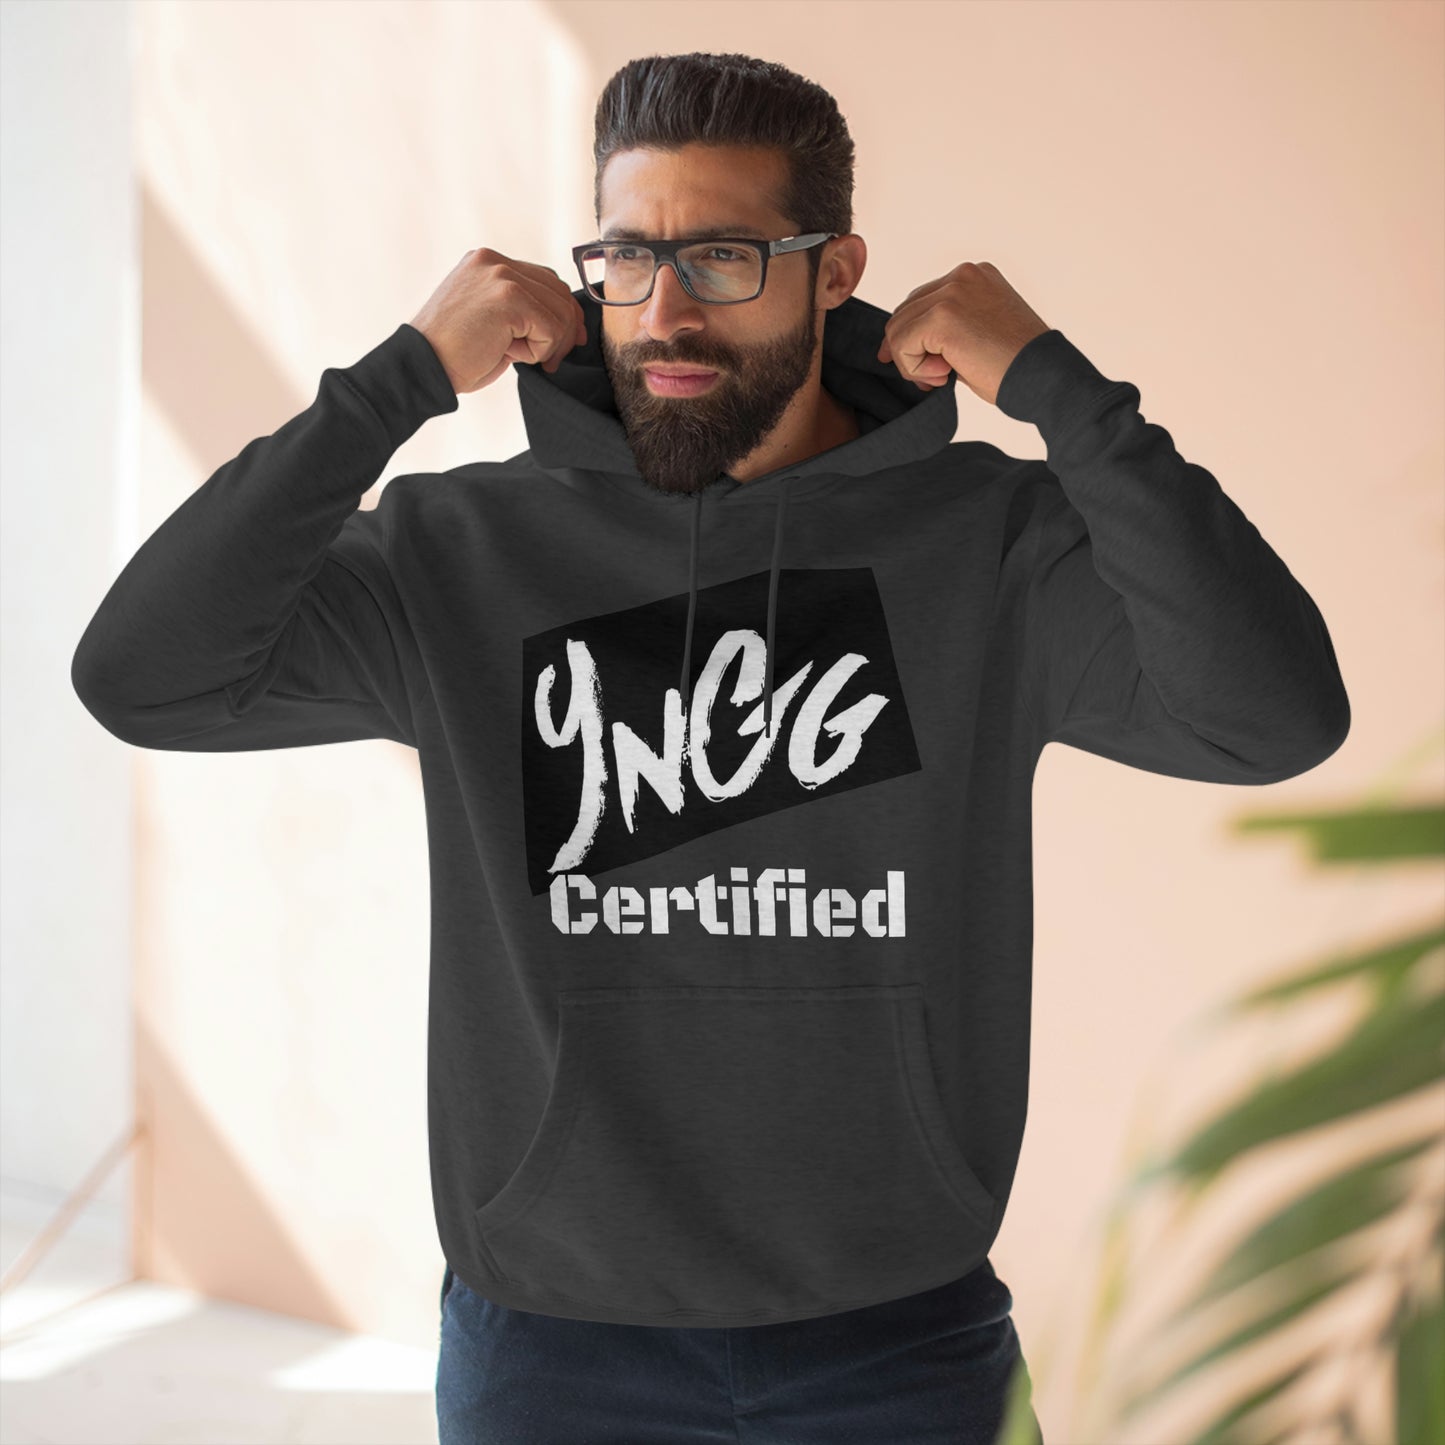 YNGG Certified Brand Hoodie